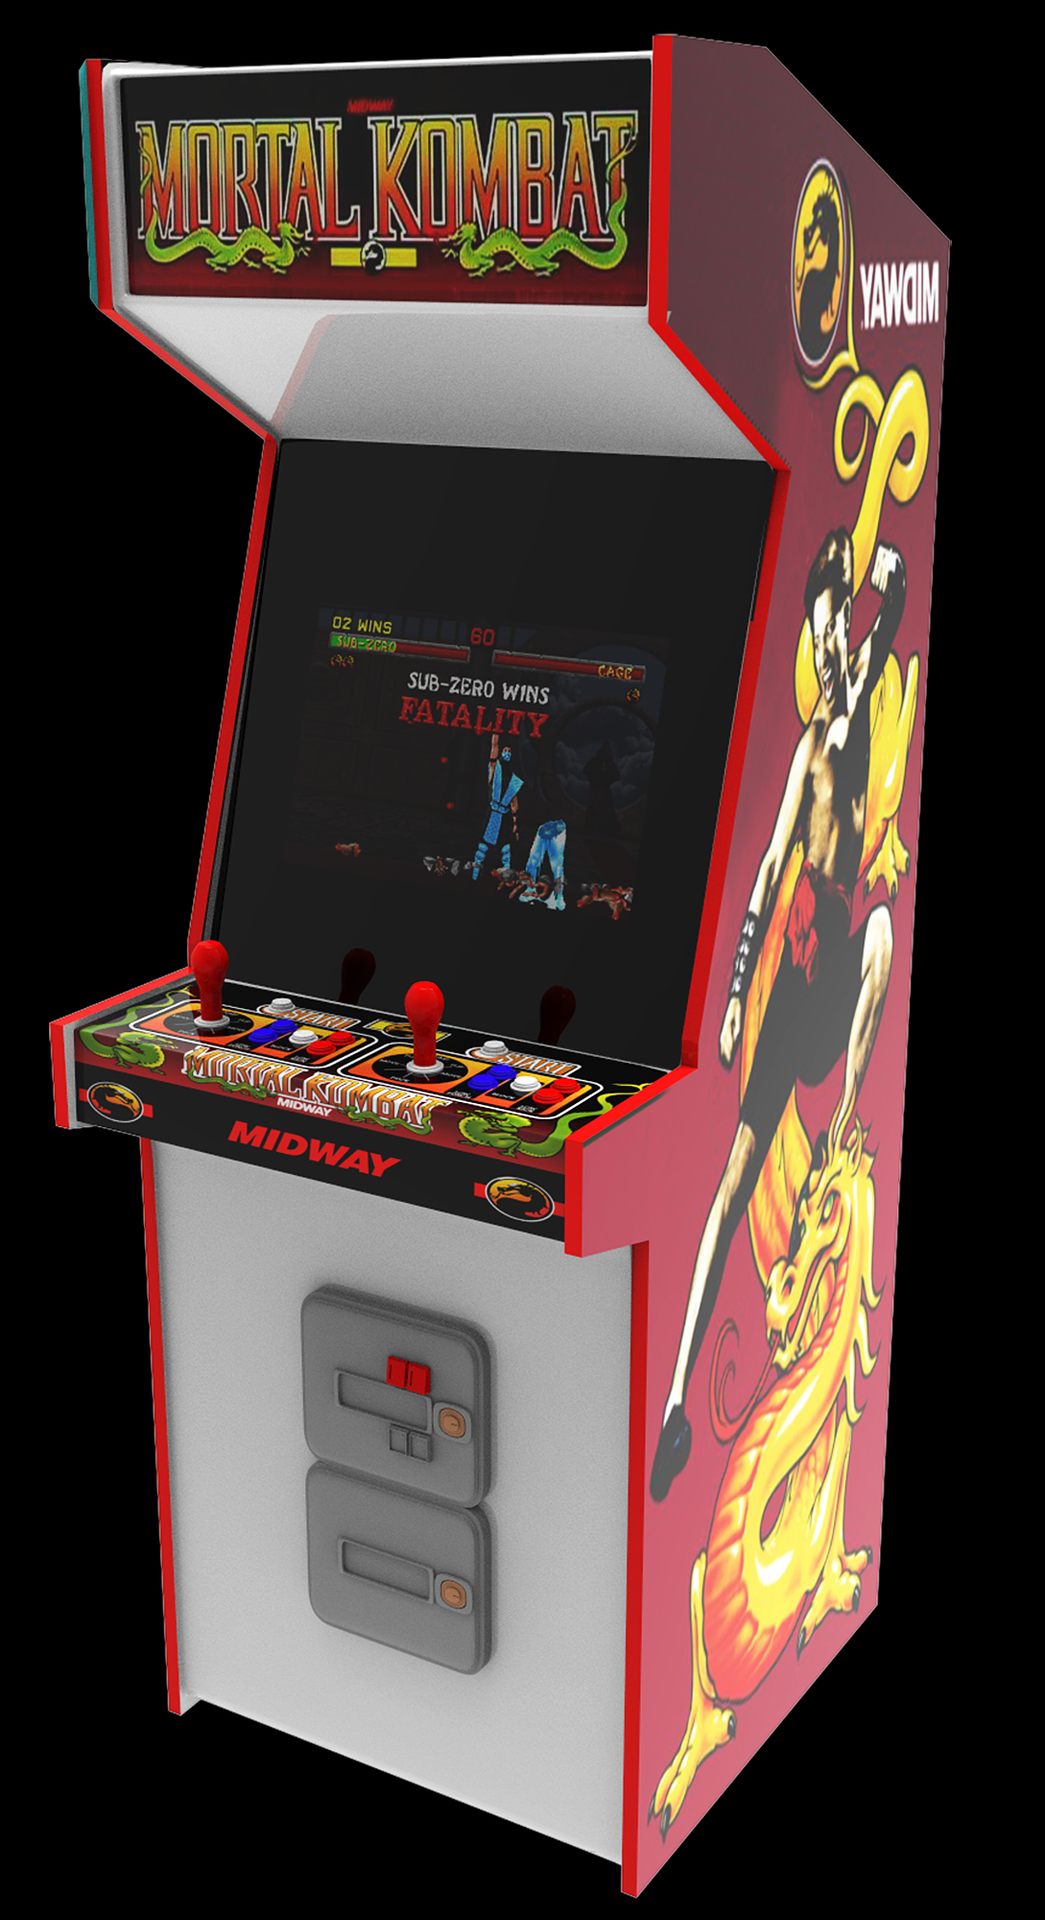 Ein Bild von einem Spielautomaten